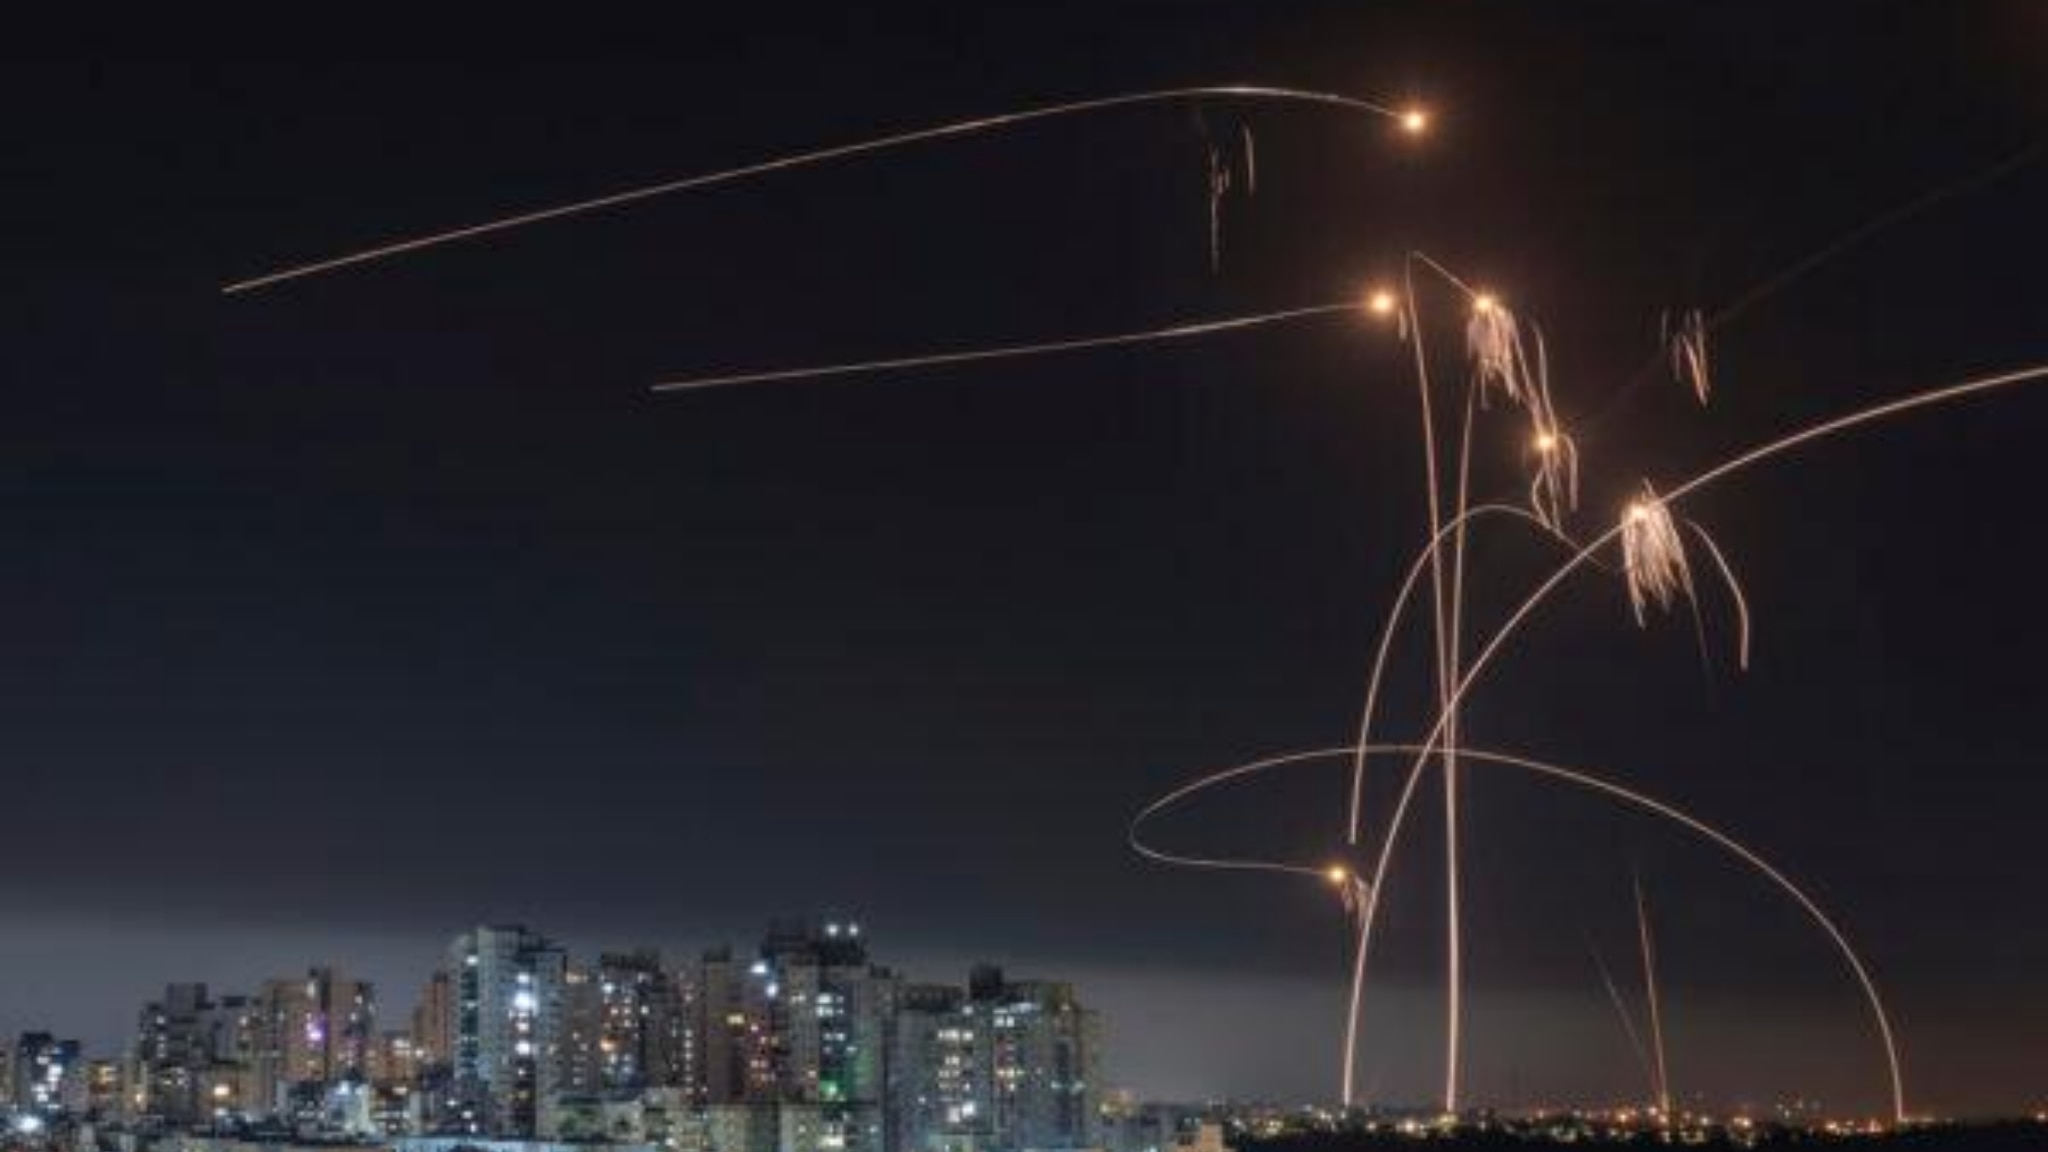 l'iran attacca israele con centinaia di droni e missili. netanyahu riunisce il gabinetto di guerra